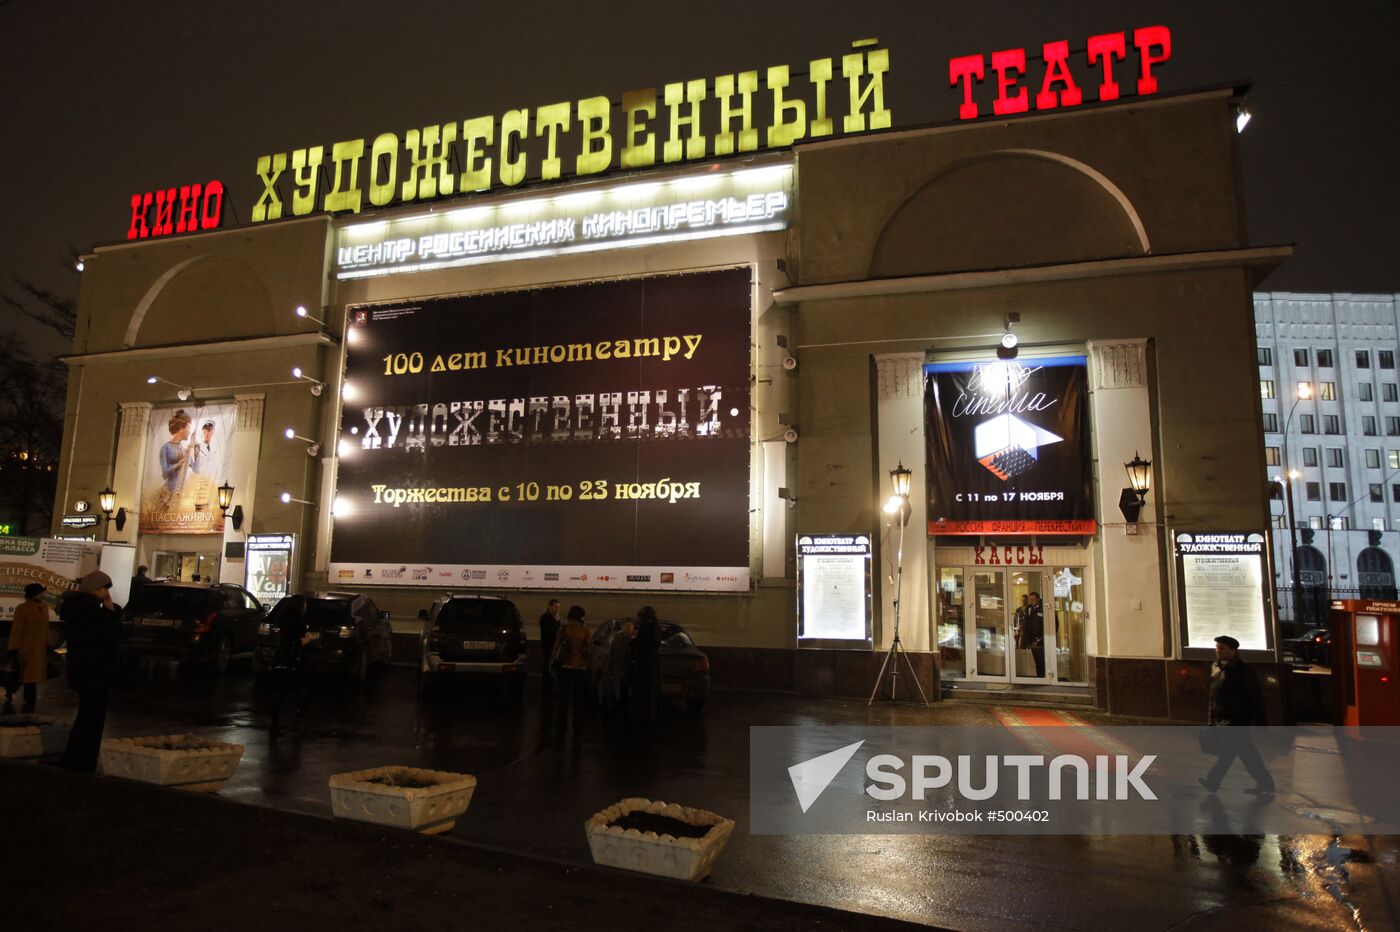 The Khudozhestvenny movie theater